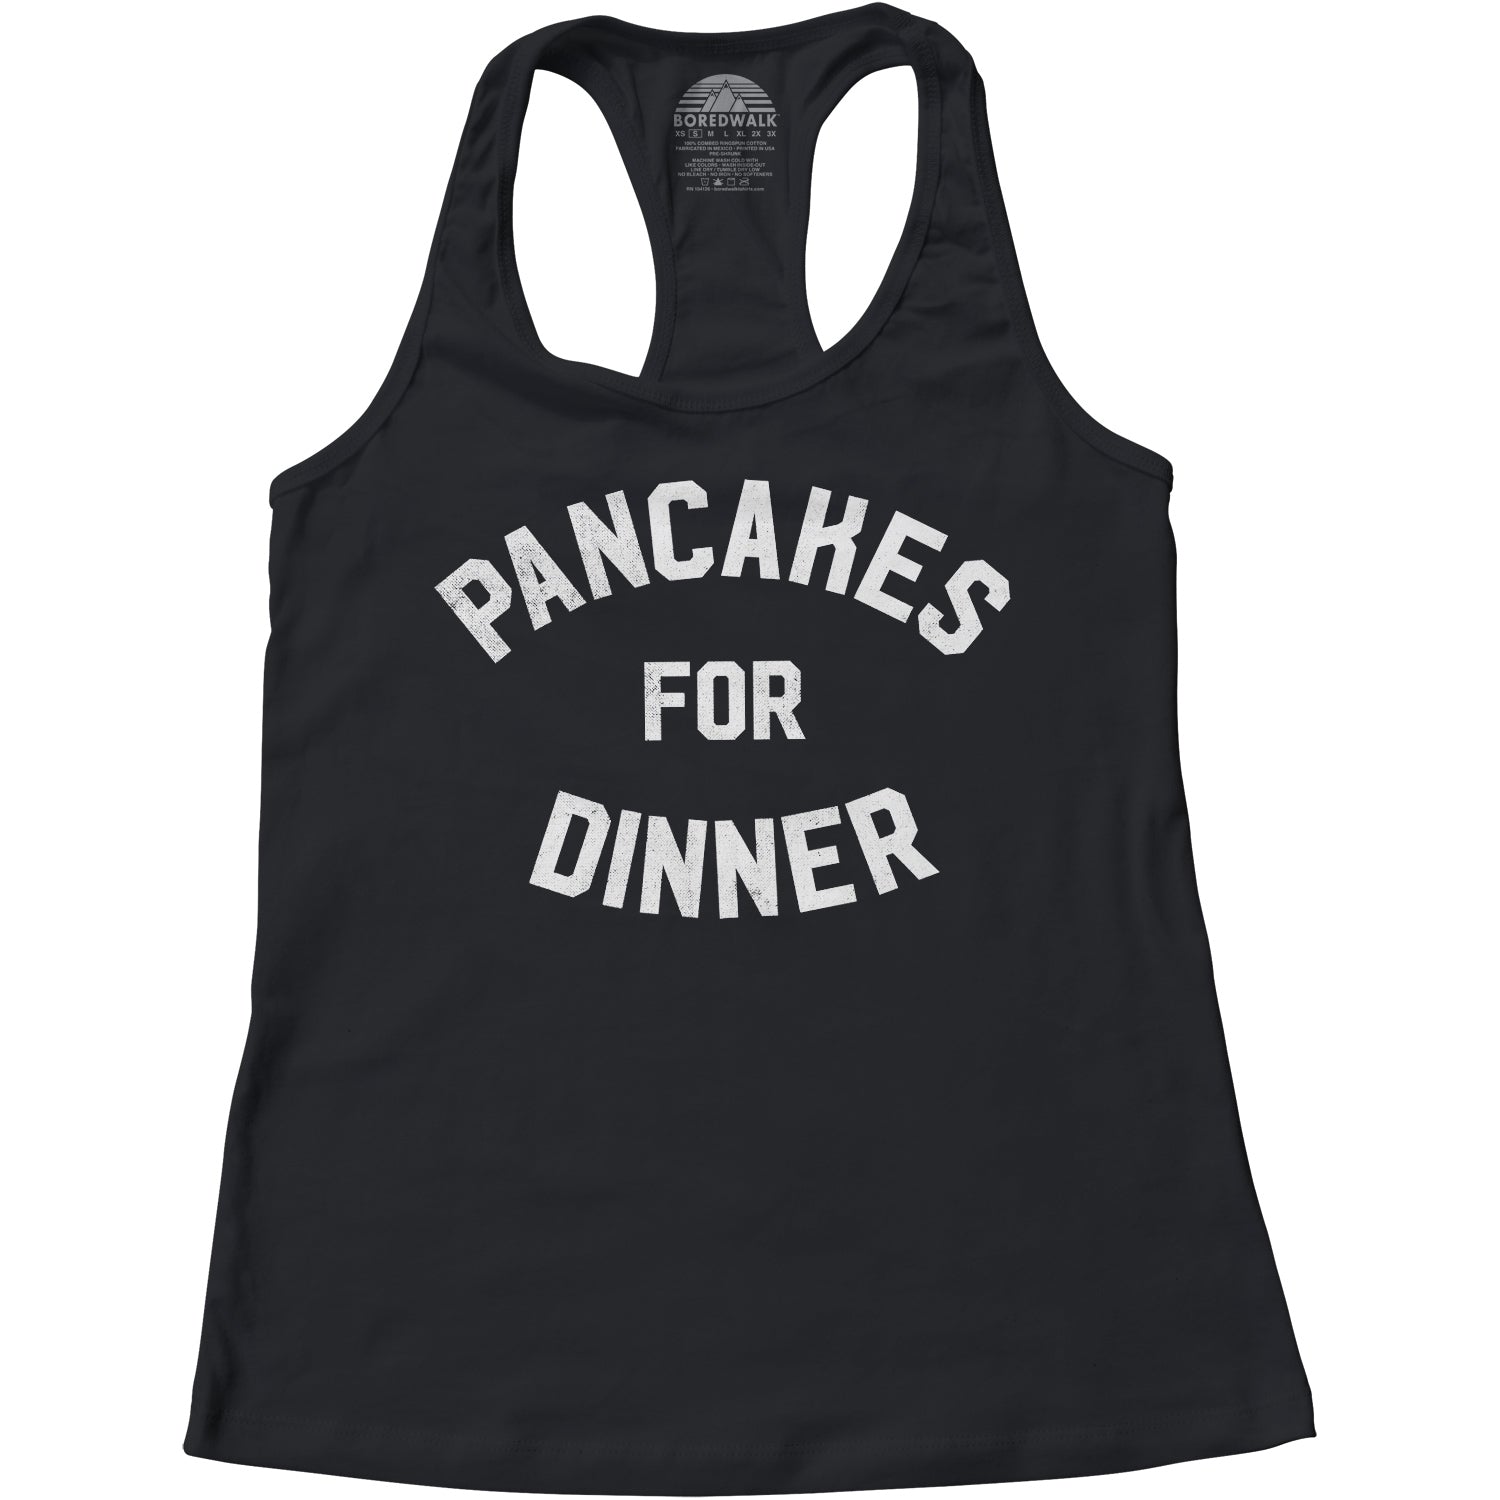 Women's Pancakes for Dinner Racerback Tank Top